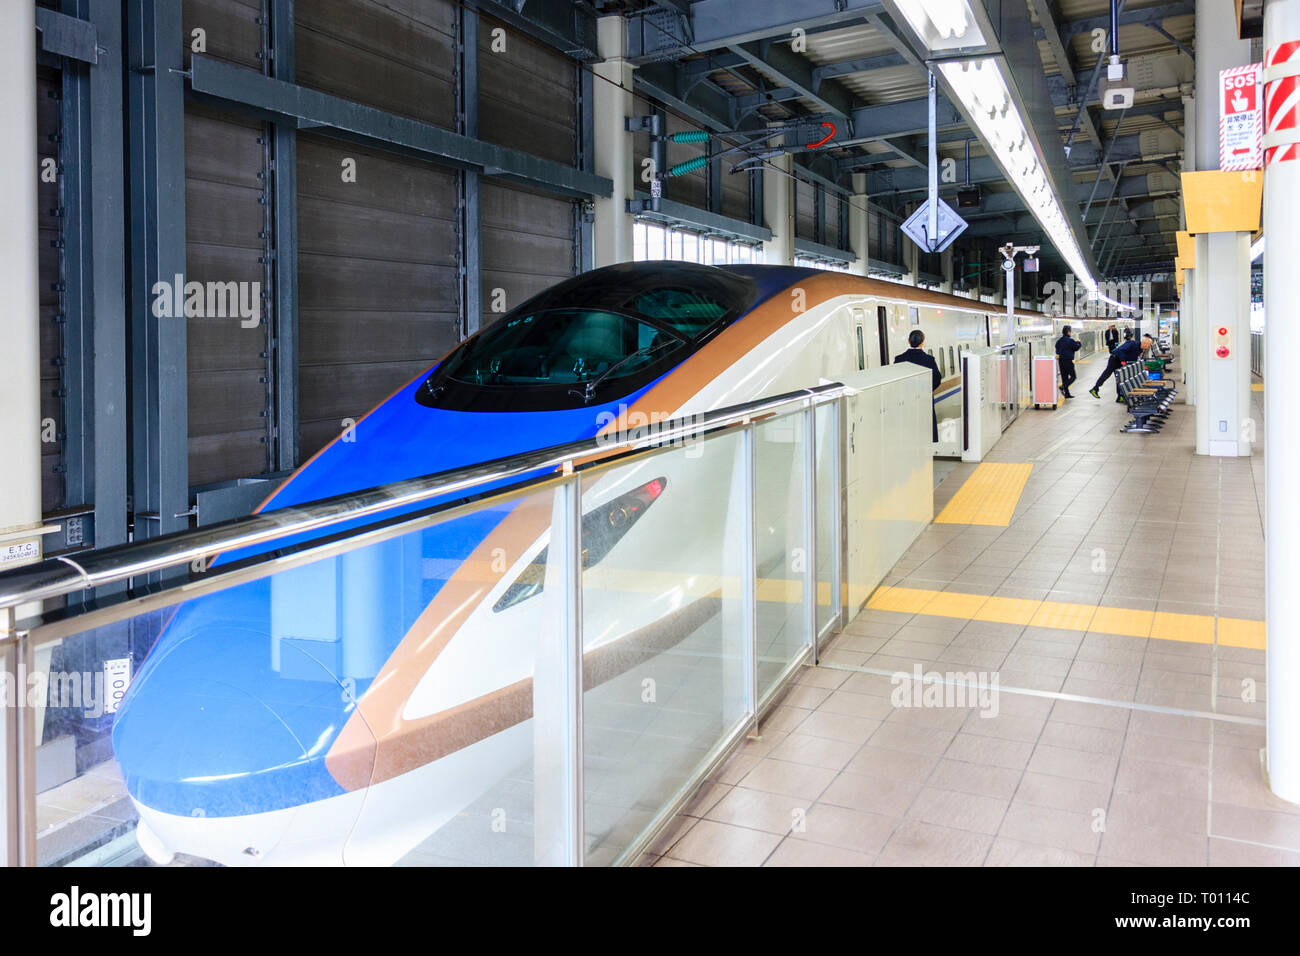 Hokurikui shinkansen bullet train, E7 Series, at the platform at Kanazawa station. View from front looking along length of train. Stock Photo